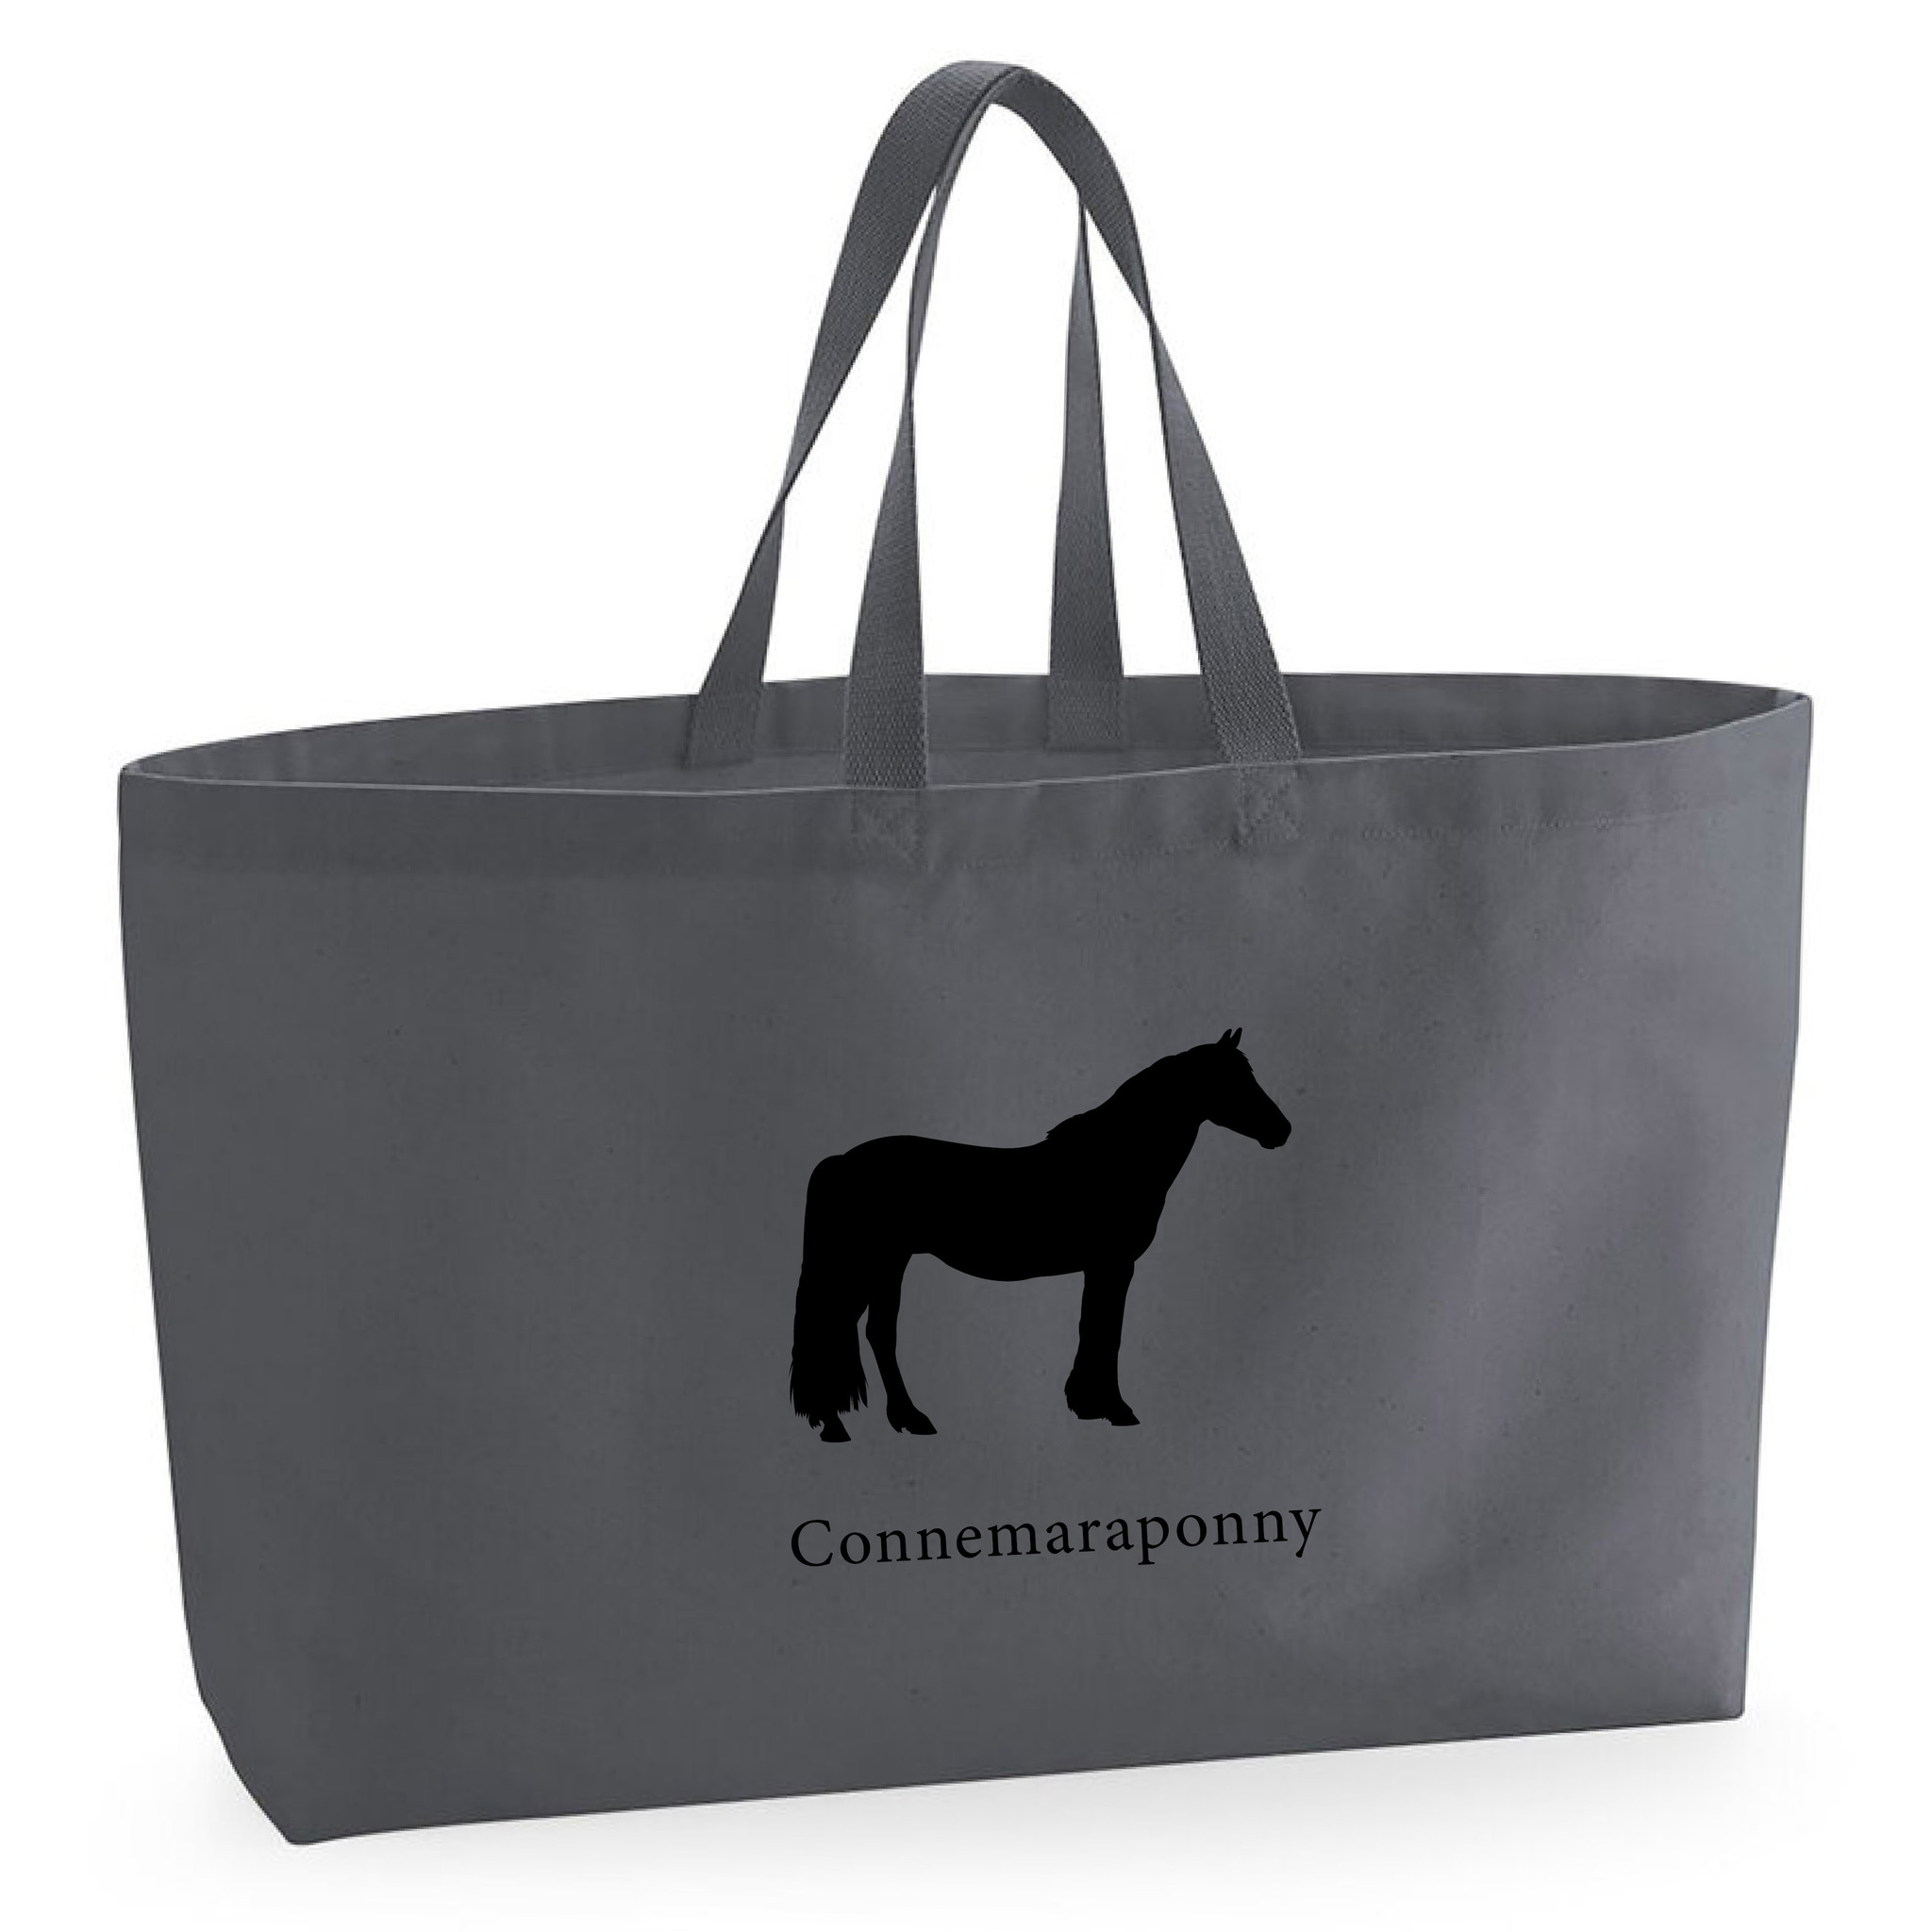 Tygkasse Connemaraponny - Oversized bag